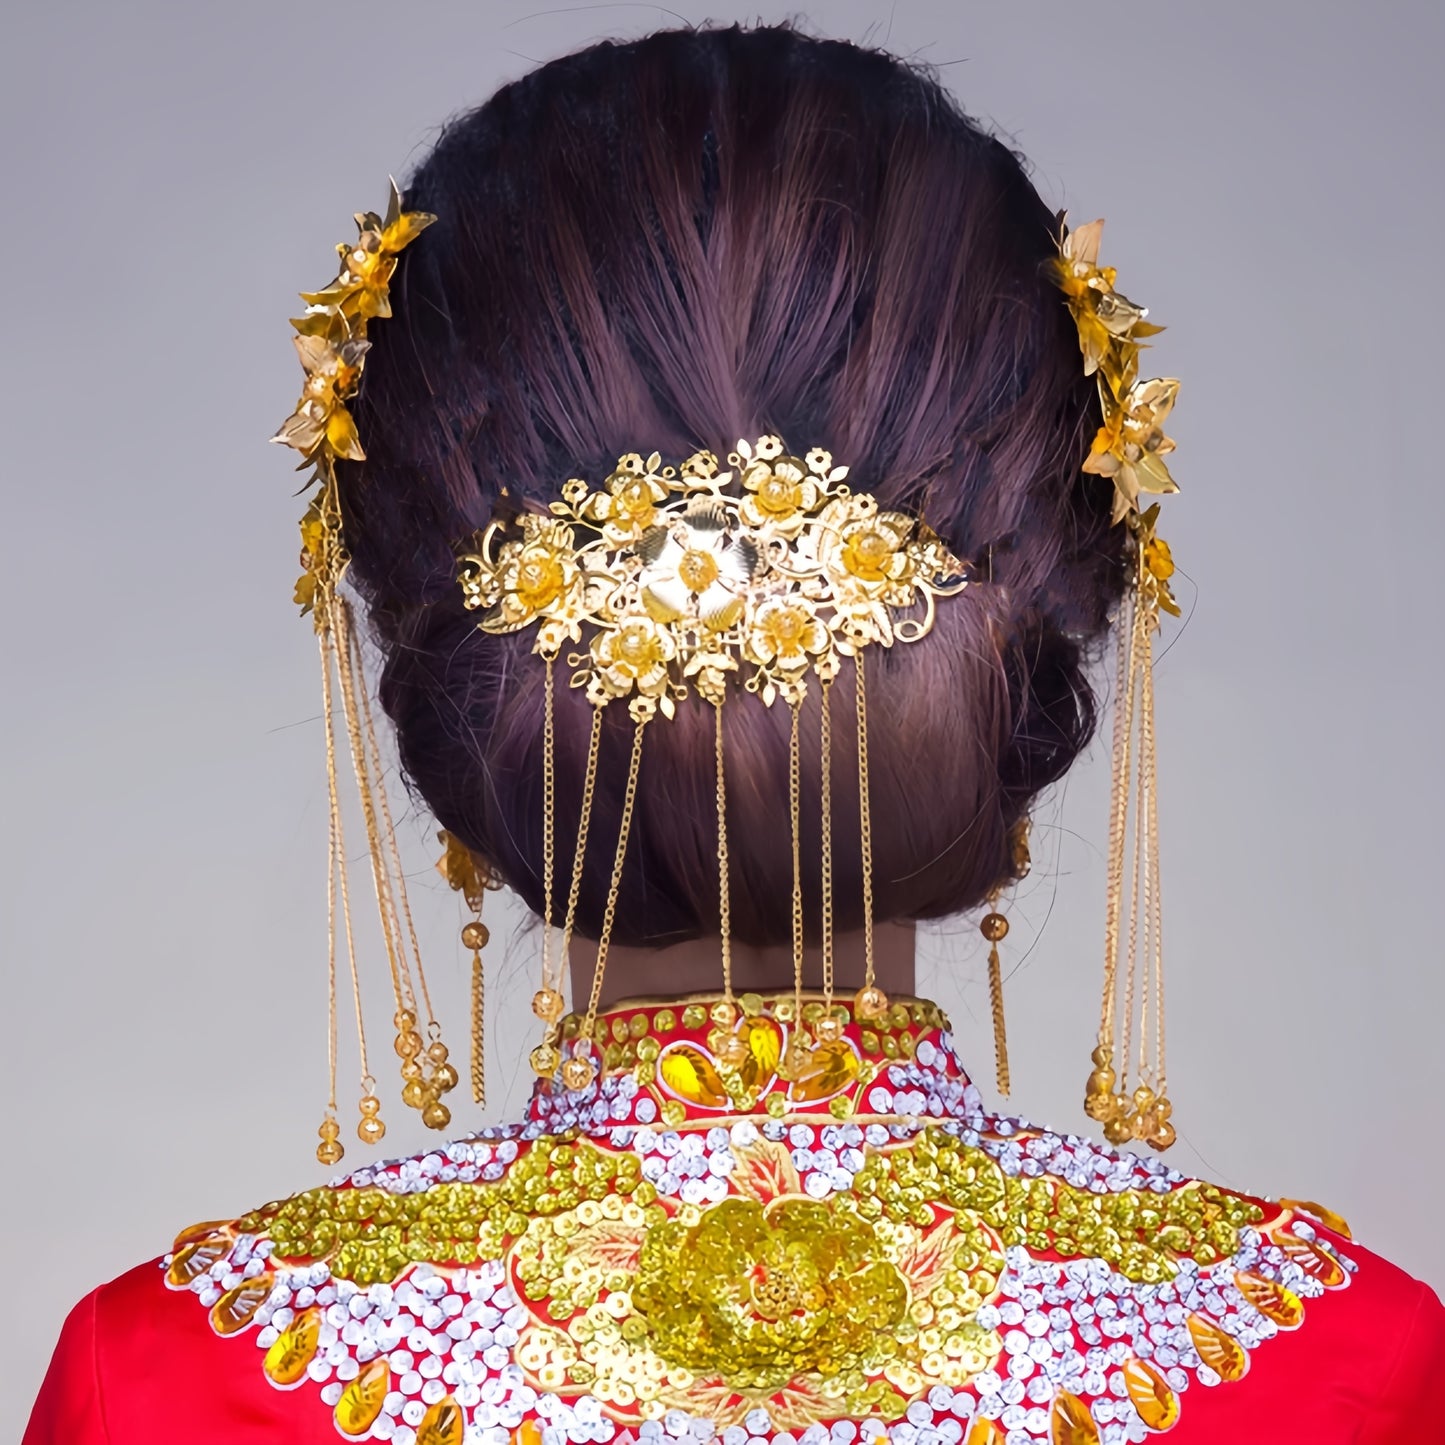 Golden Bridal Flower Hairpieces Set (5pcs)